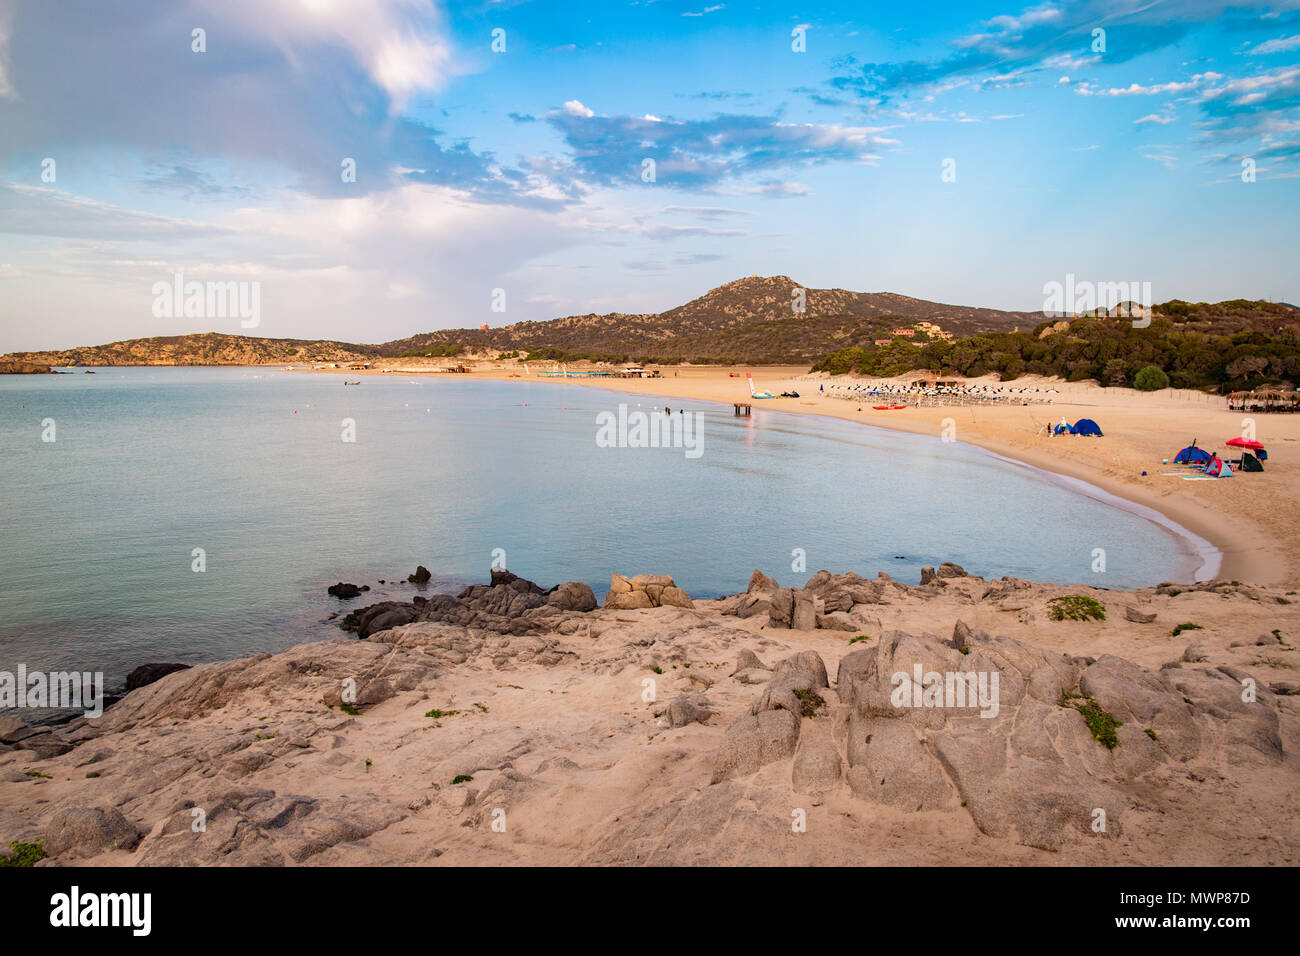 Il mare e le spiagge incontaminate di Chia, l'isola di Sardegna, Italia. Foto Stock